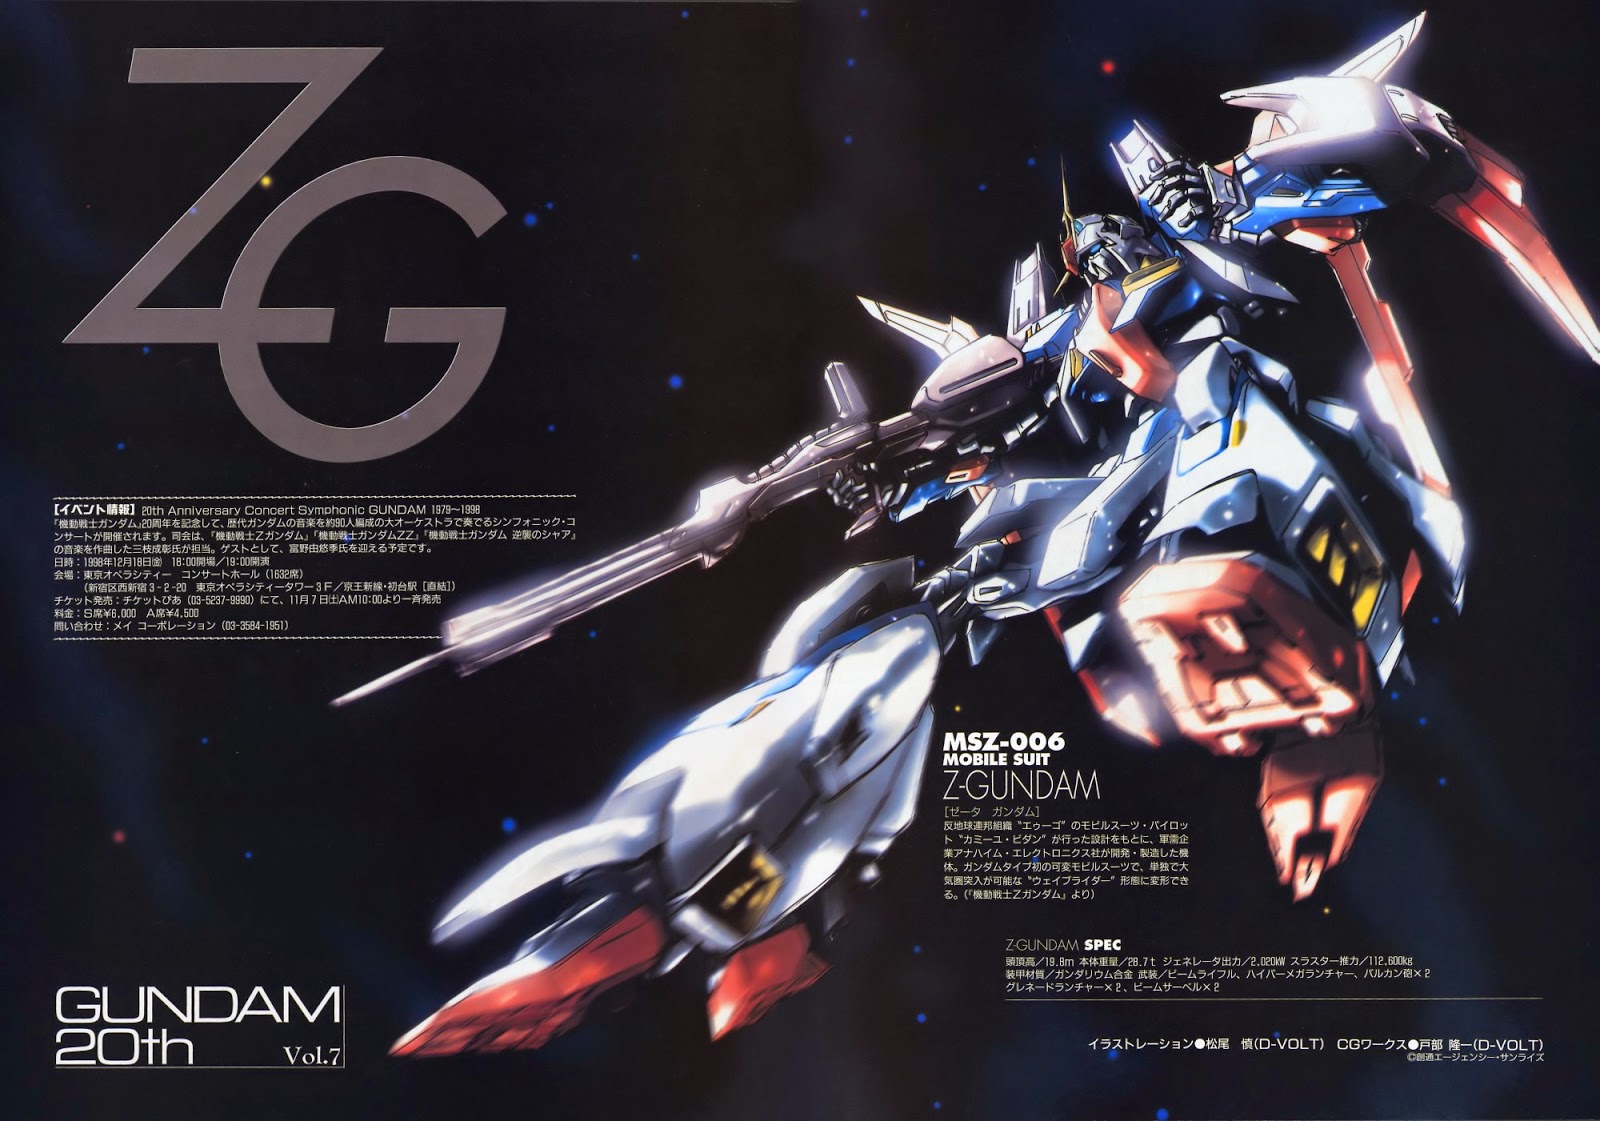 Zeta Gundam Wallpaper No Texts Gundam Kits Collection News And Reviews